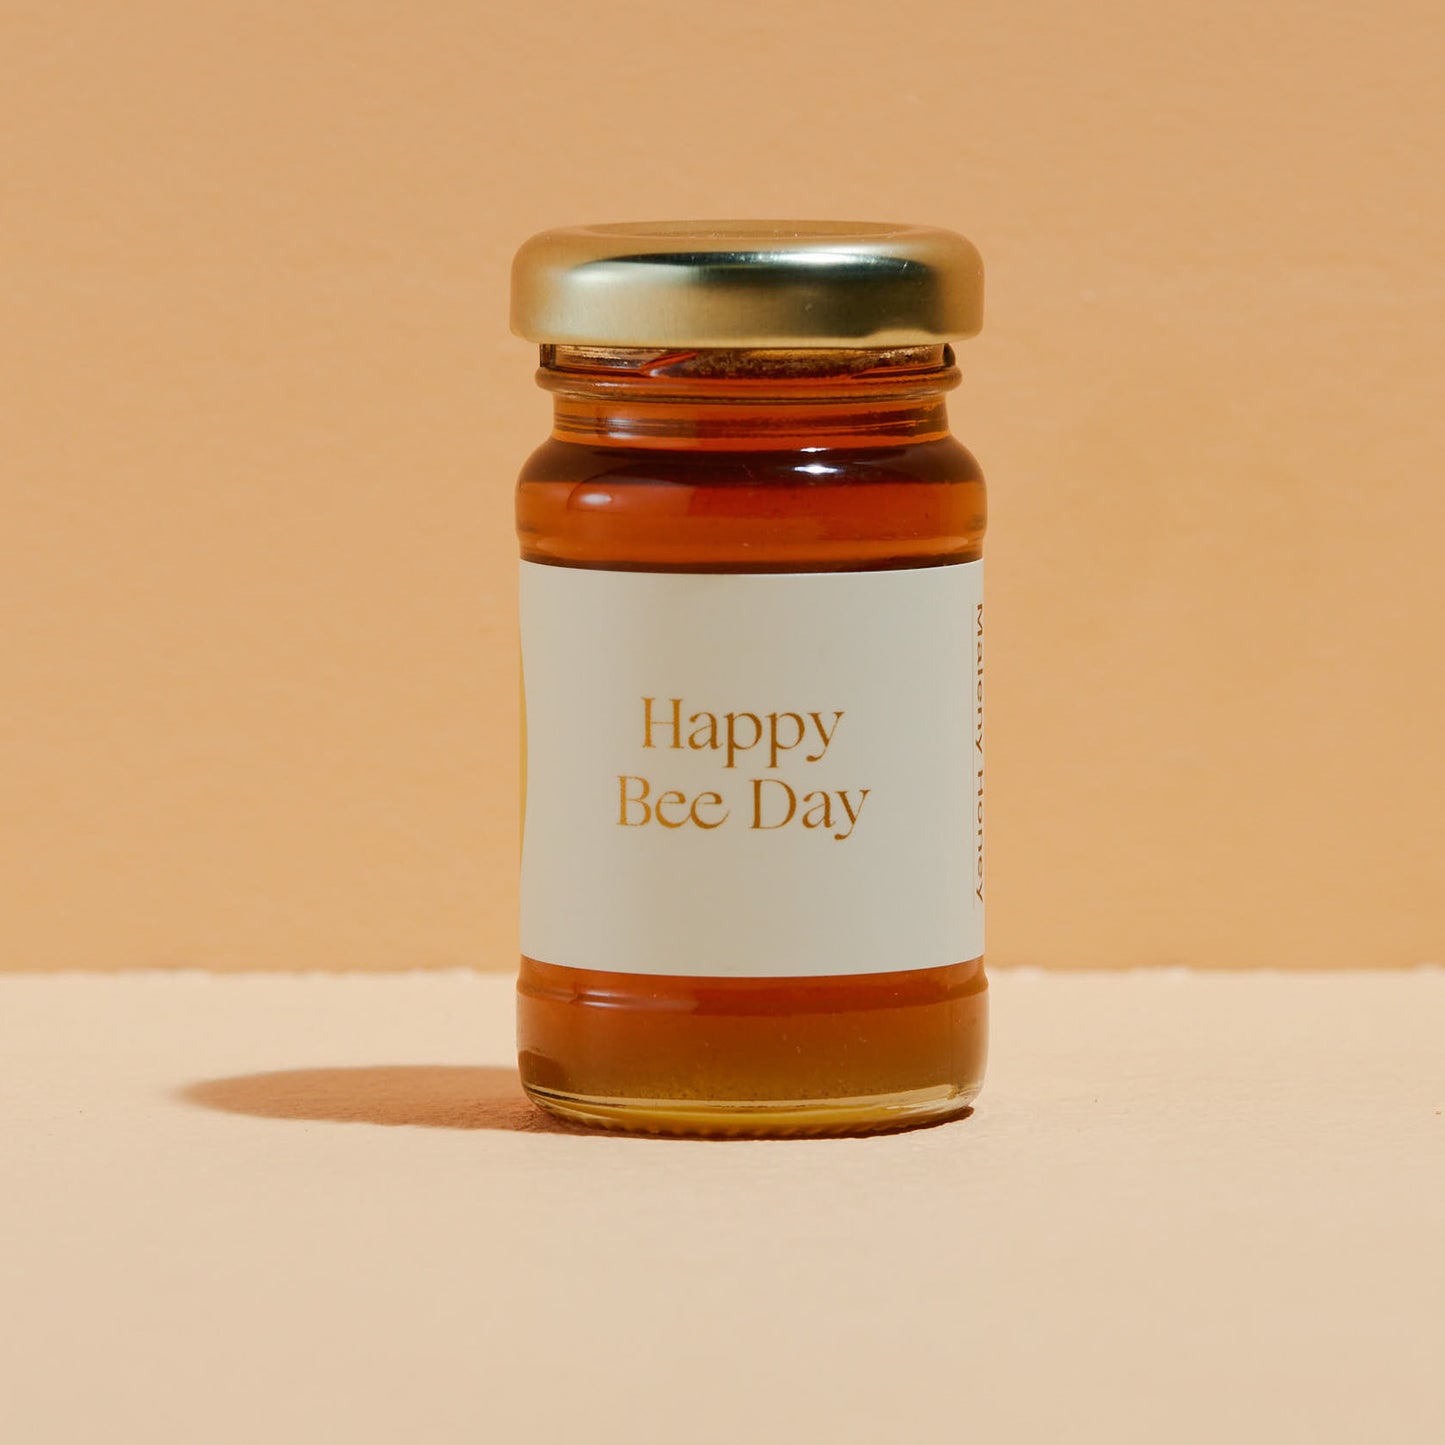 Maleny Honey Petite "Happy Bee Day"